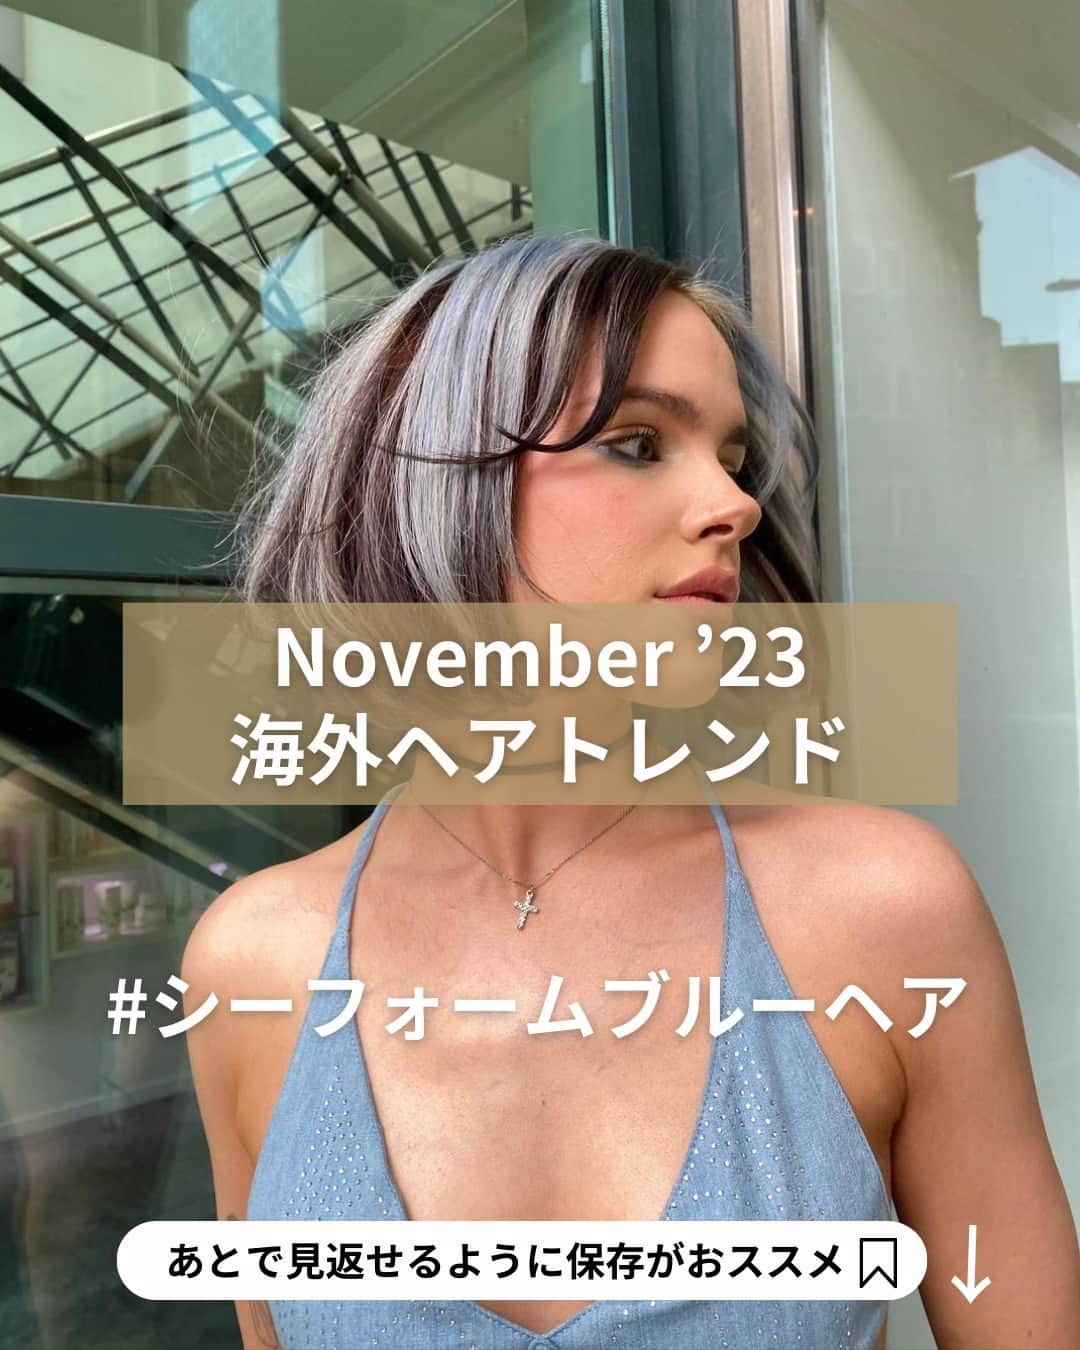 Wella Professionals Japanのインスタグラム：「【ヘアカラートレンド】 暗髪とパステルブルーのツートンカラーで目を引くクールなスタイルに💙 #シーフォームブルーヘア 🌊 Created🎨by @emilydyerhair さん  ✅デザインカラーご希望のお客様の参考イメージとしてぜひ保存してください！ ✅#シーフォームブルーヘア にお勧めのシェードは、こちら☟ ◆ブリーチ：ウエラブリーチ ノンダスト で18-10レベルまでブリーチ ◆オンカラー：イルミナカラー  CRYSTAL + DEEPSEA (10：1)  #SeaFoamBlueHair  #ウエラ #Wella #ウエラプロフェッショナル #ヘアスタイリング #ヘアカラー #コレストン #コレストンパーフェクト #コレストンパーフェクトプラス #イルミナ #イルミナカラー #システムプロフェッショナル #美容師 #海外ヘア #海外トレンド #トレンドヘアカラー」